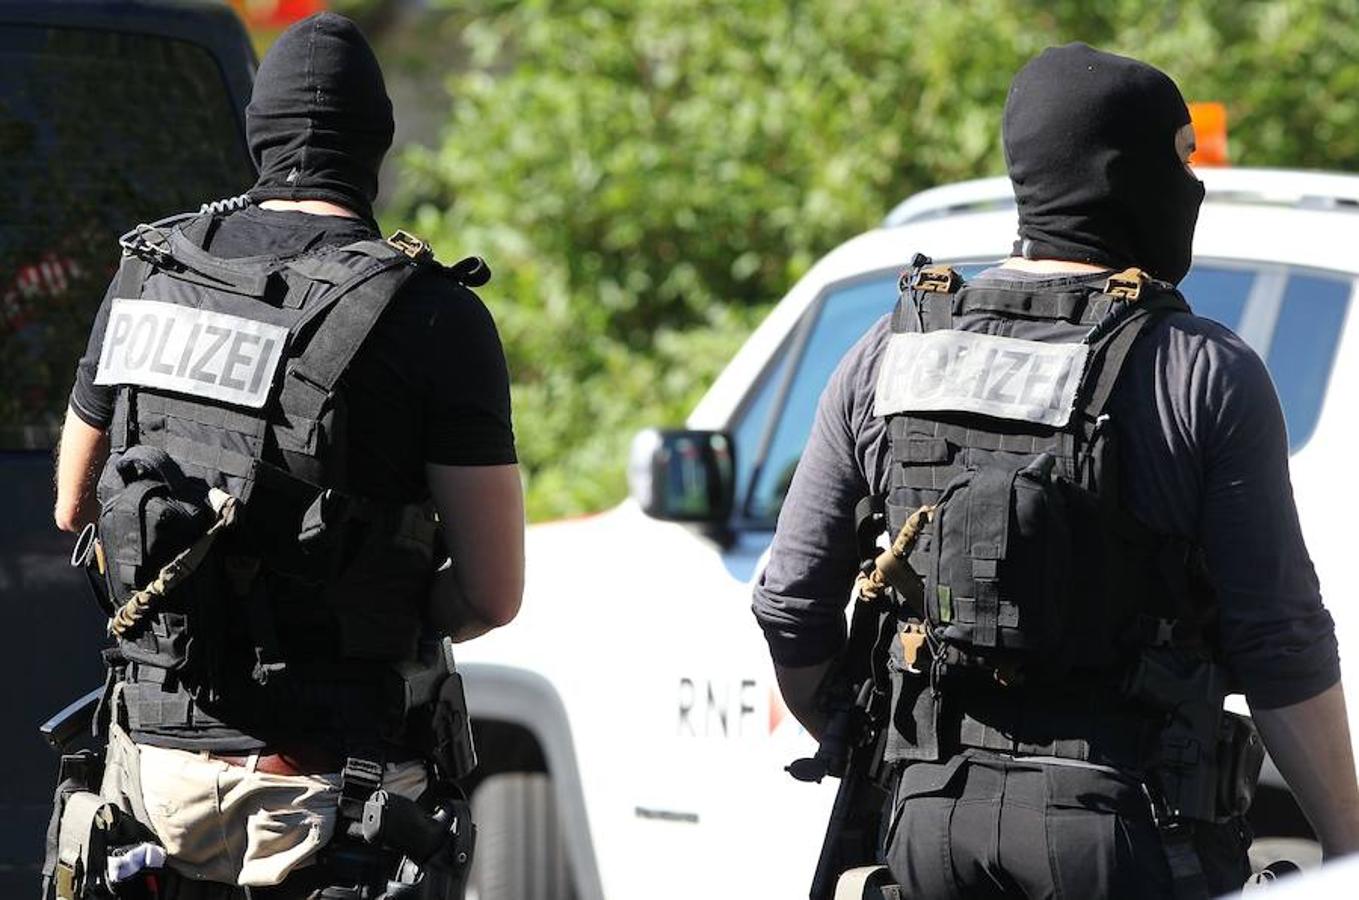 El asaltante efectuo al parecer cuatro disparos, según medios alemanes